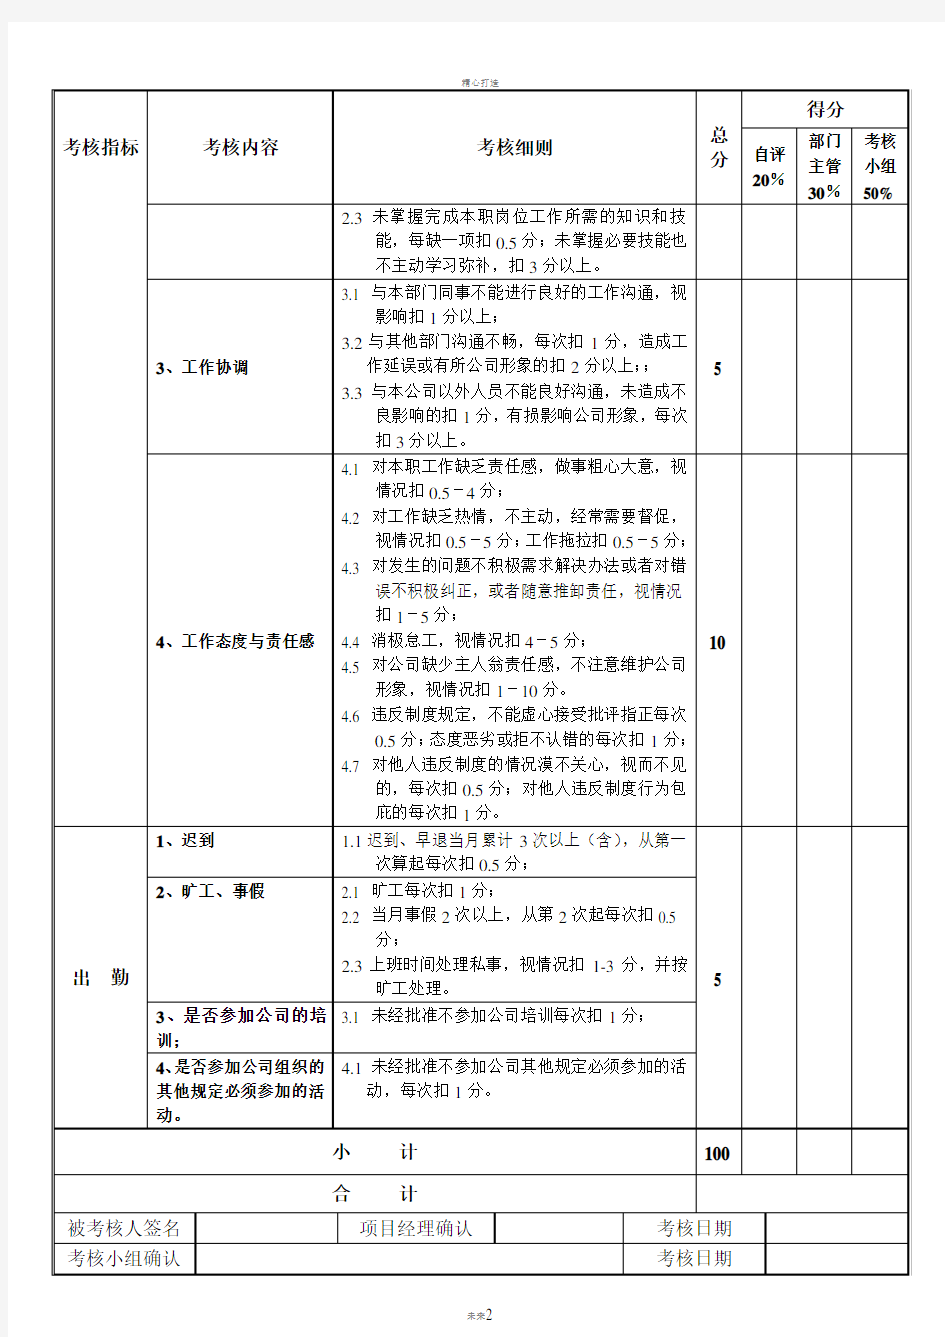 项目部绩效考核表(修订)质检员考核表